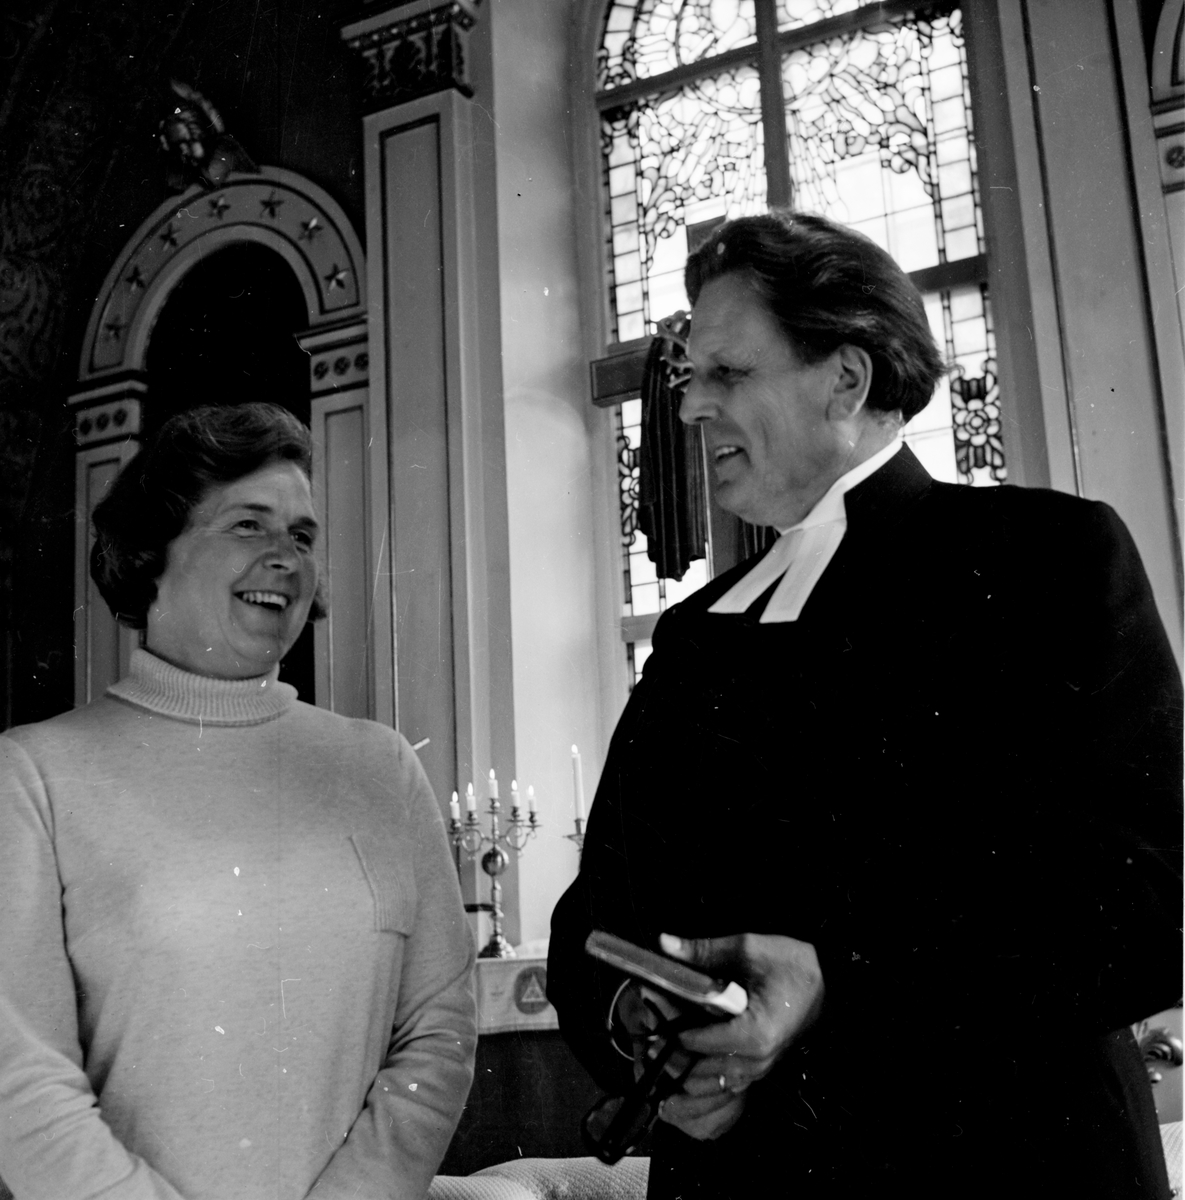 Arbrå,
Fru Jonäng i kyrkan tillsammans med prästen Öhgren.
Okt 1970